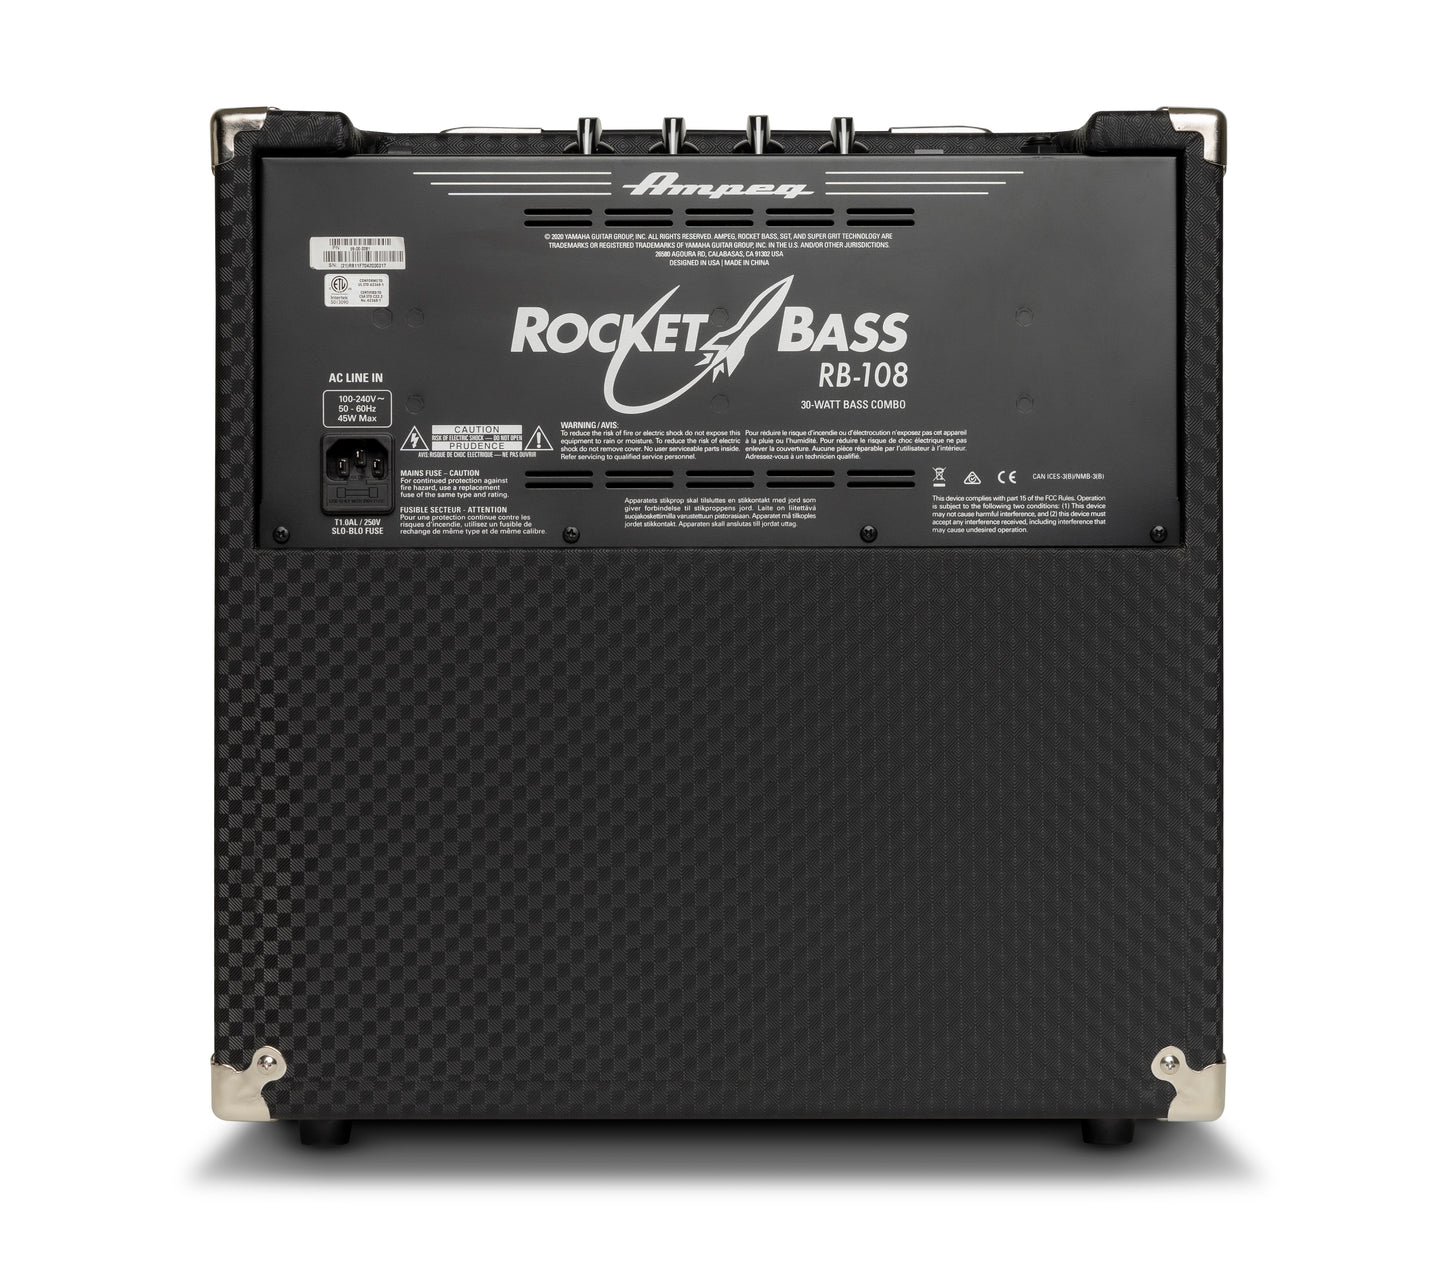 Ampeg 30 Watt Rocket Bass Combo Amplifier